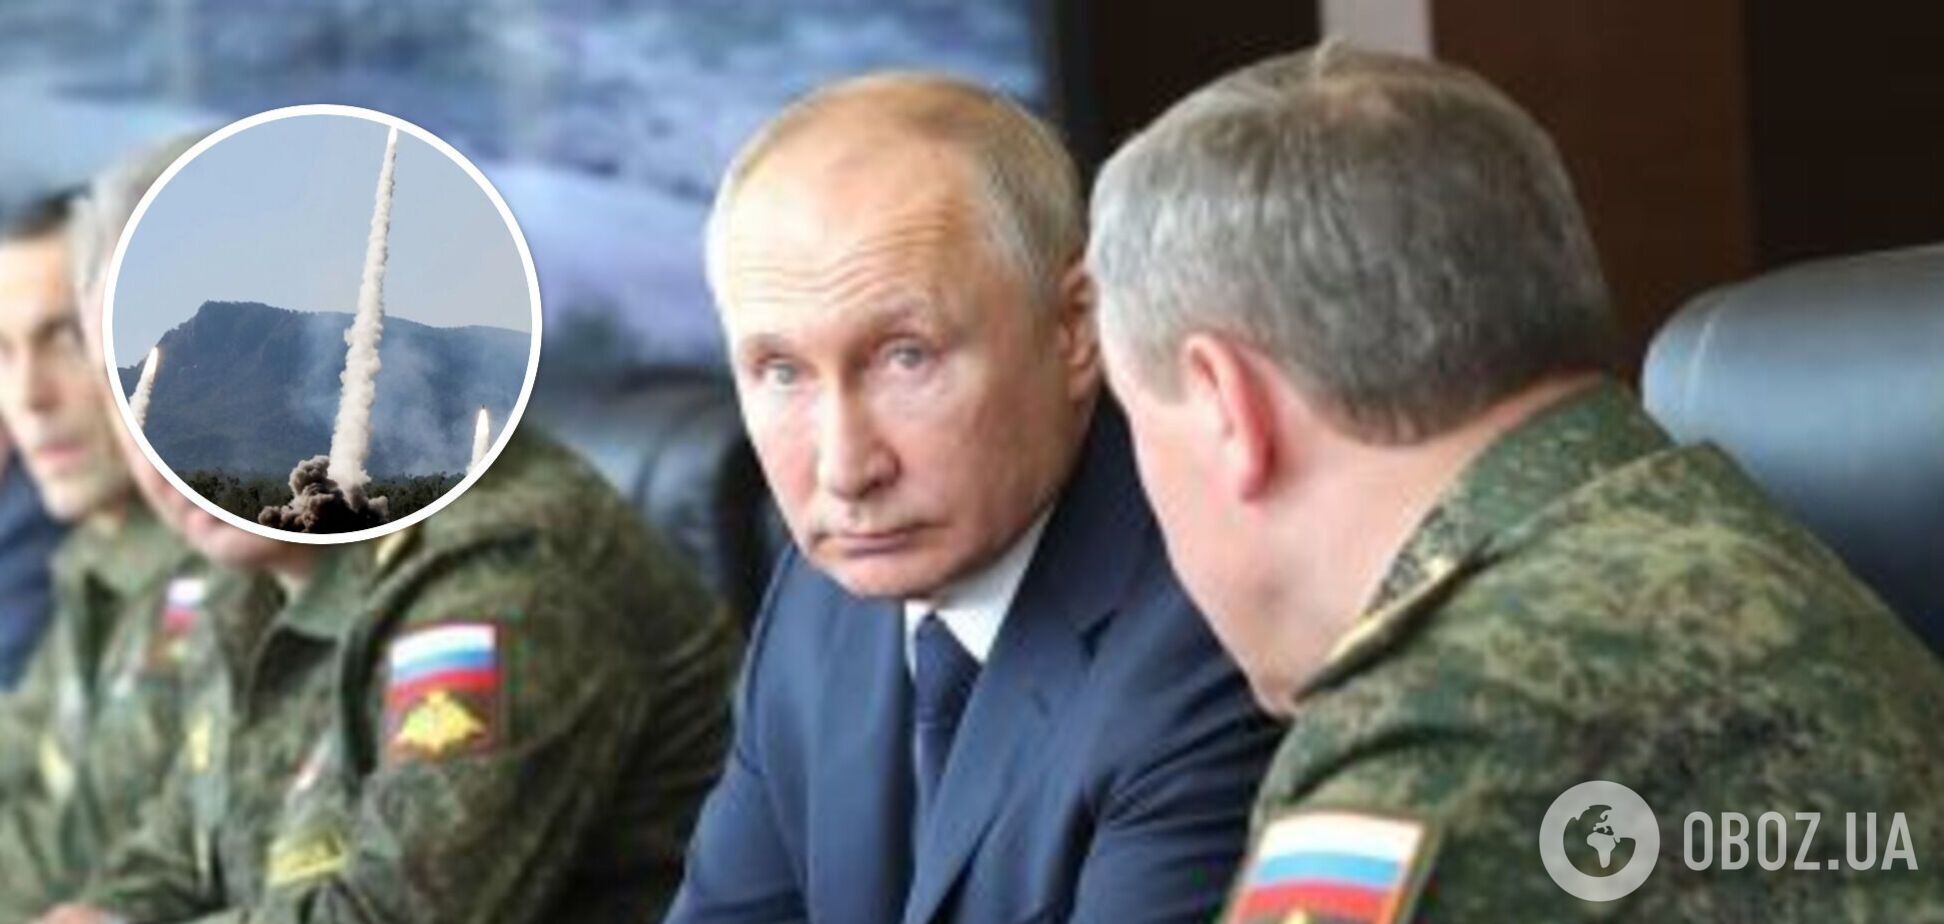 Ударная группировка РФ может появиться на севере за три дня: Жирохов указал на опасность